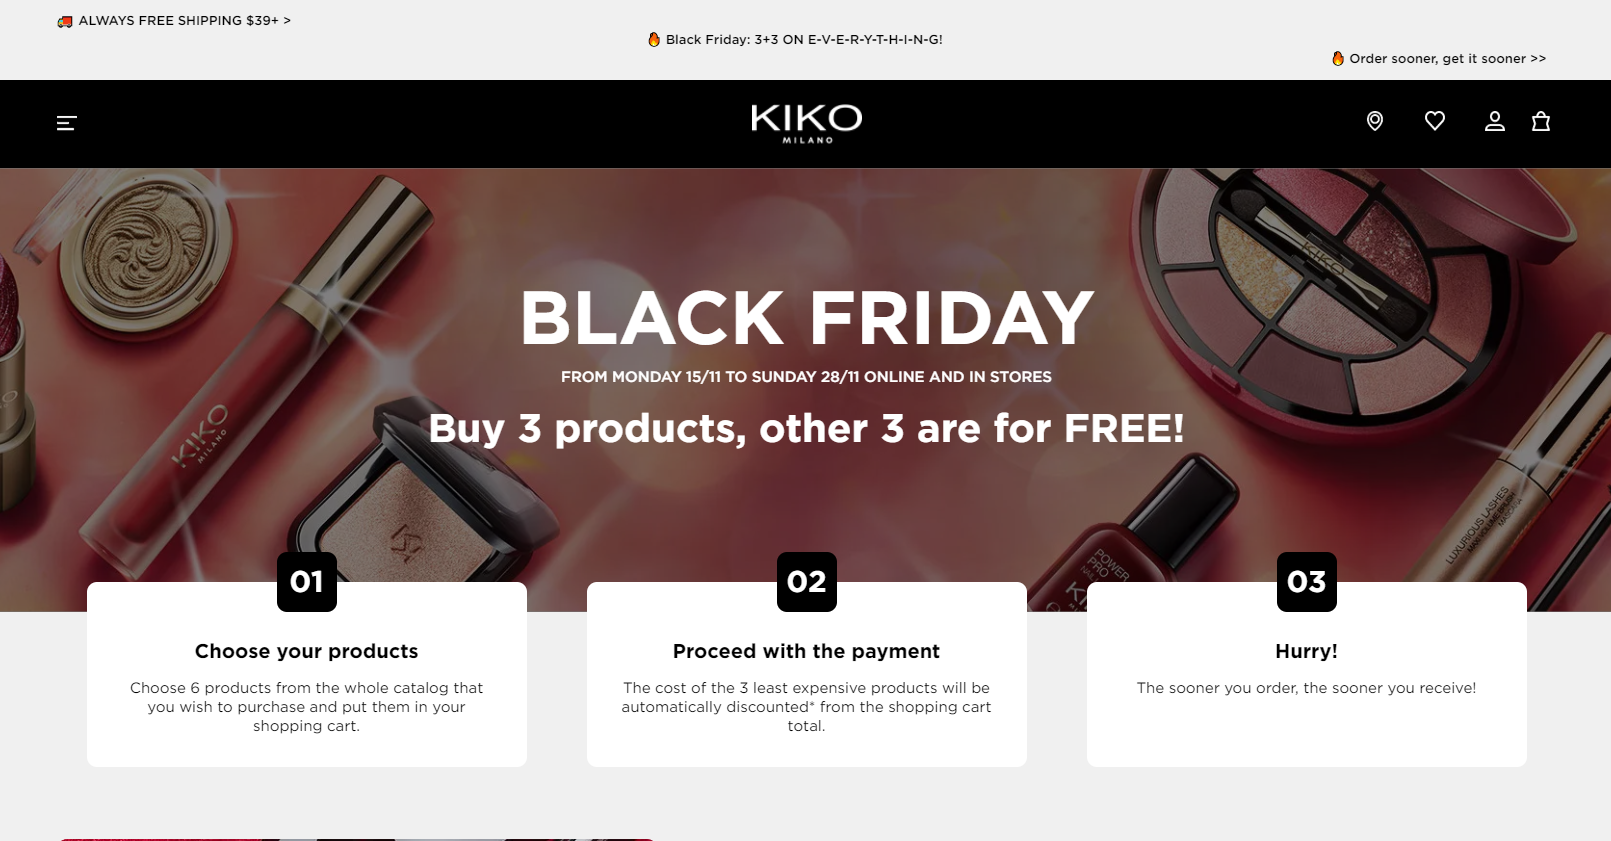 Kiko優惠代碼2022-kiko美國官網黑五全場買三送三促銷套裝也參與